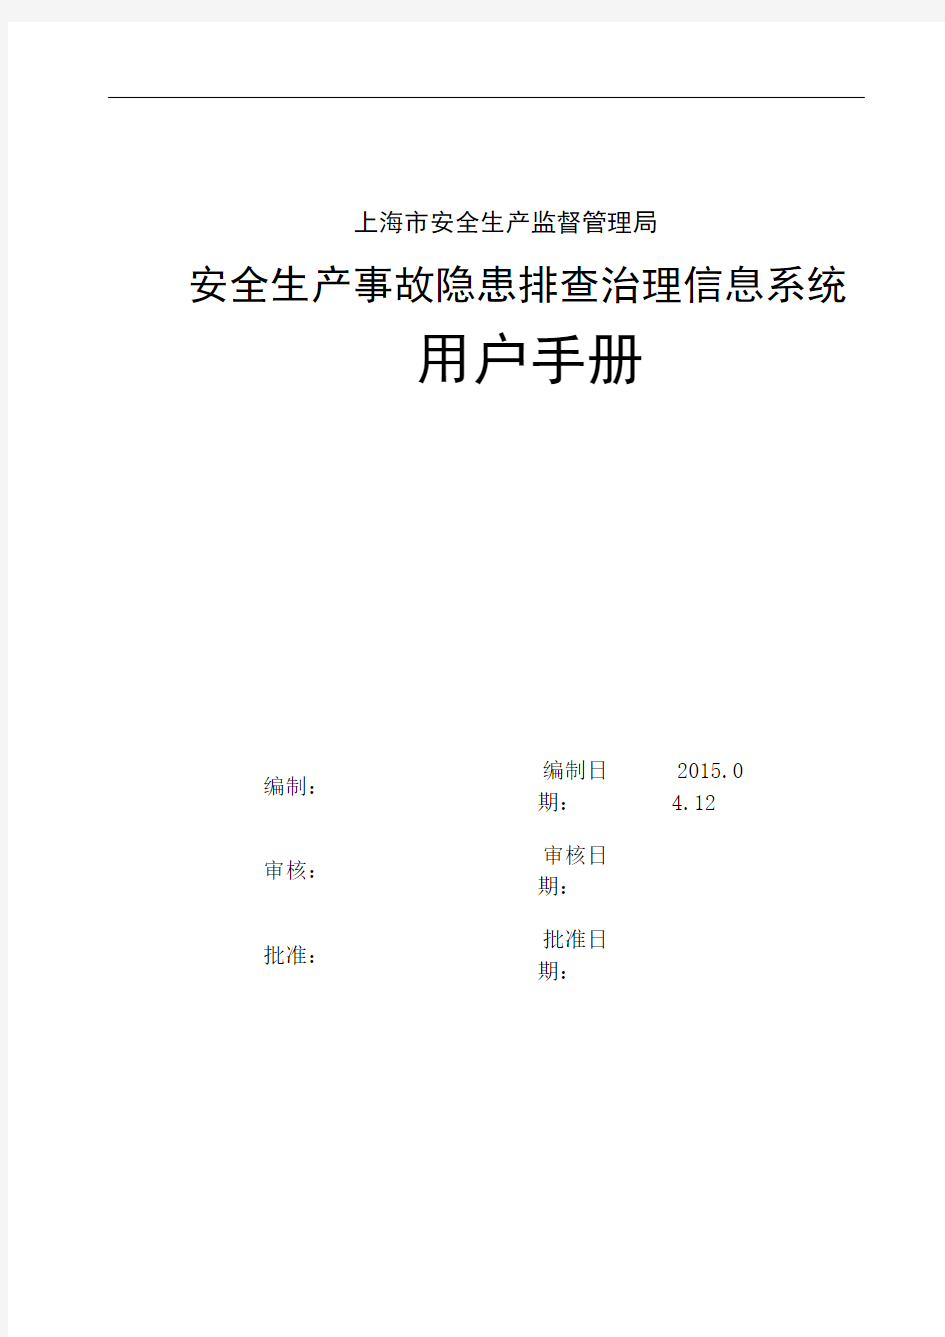 上海安全生产隐患排查治理信息系统用户操作手册